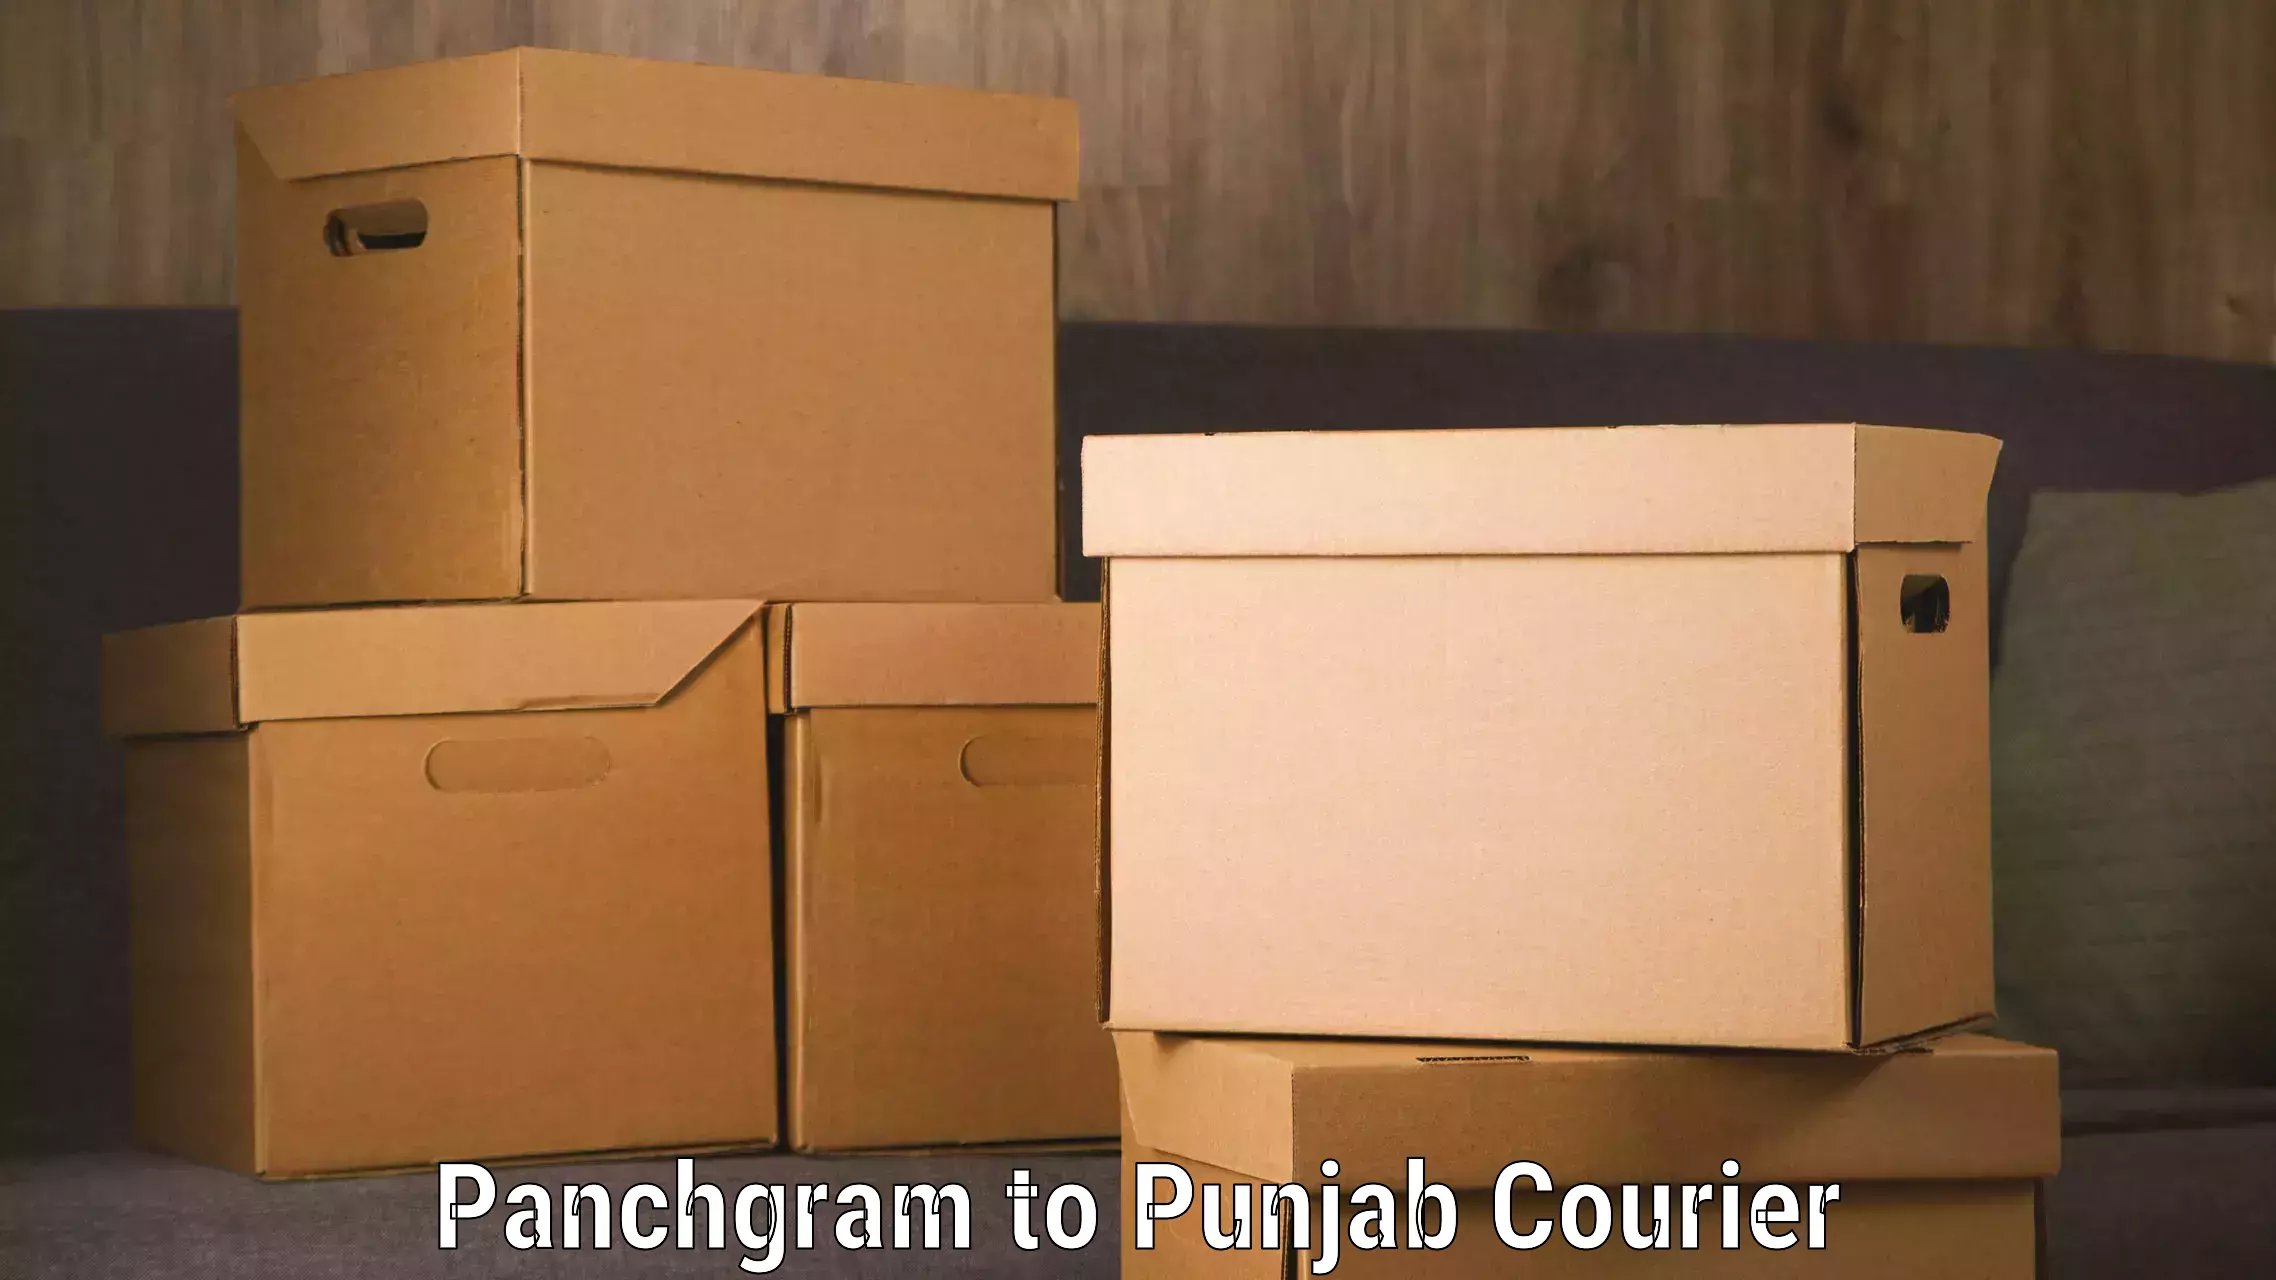 Luggage transport service Panchgram to Punjab